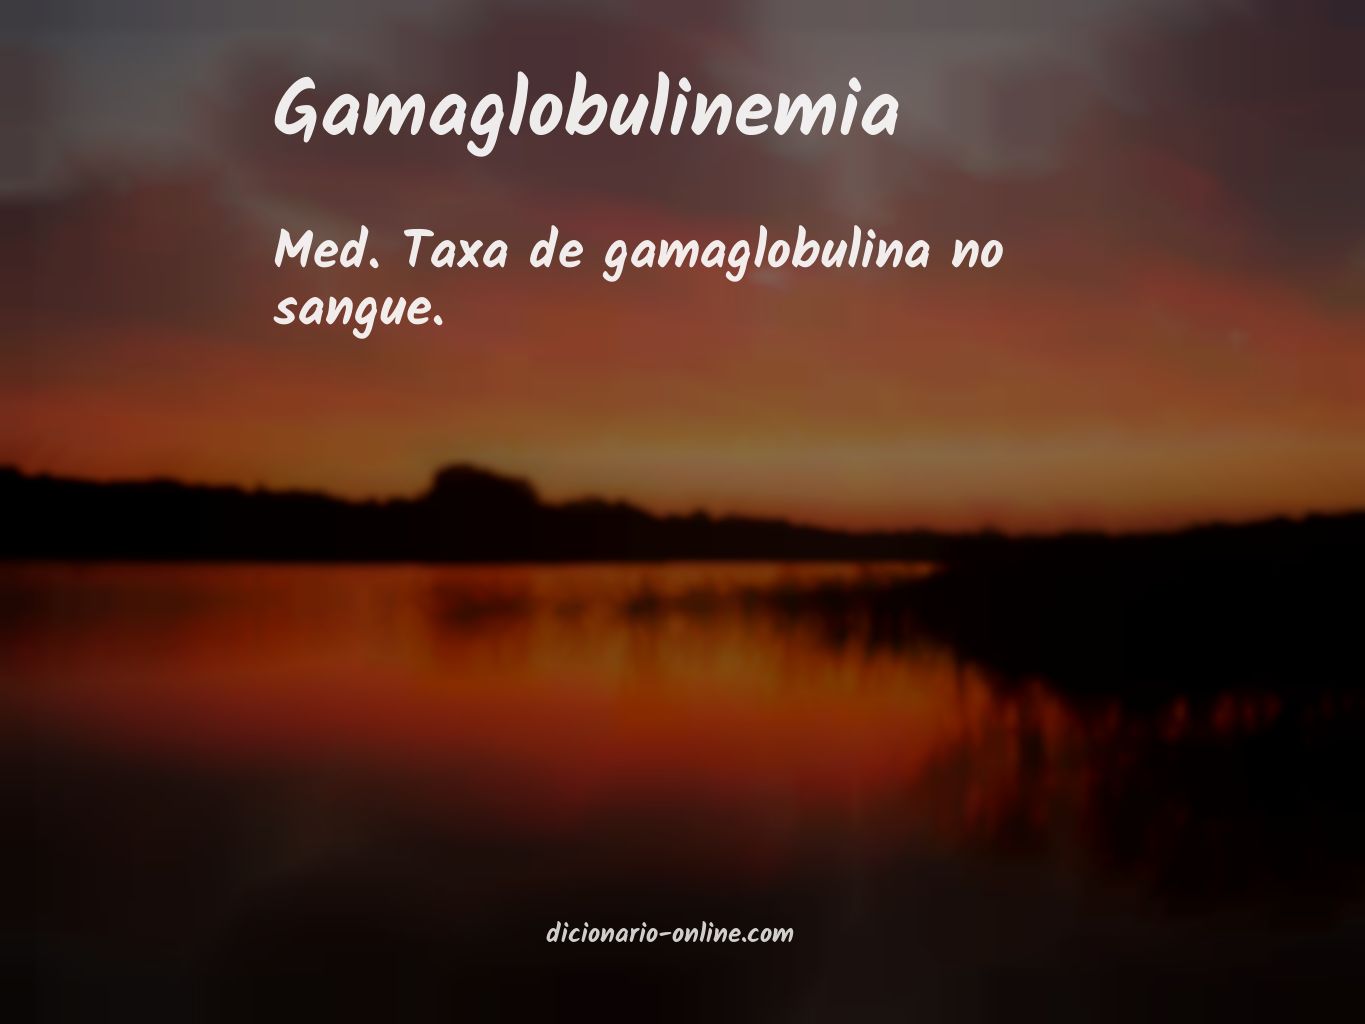 Significado de gamaglobulinemia